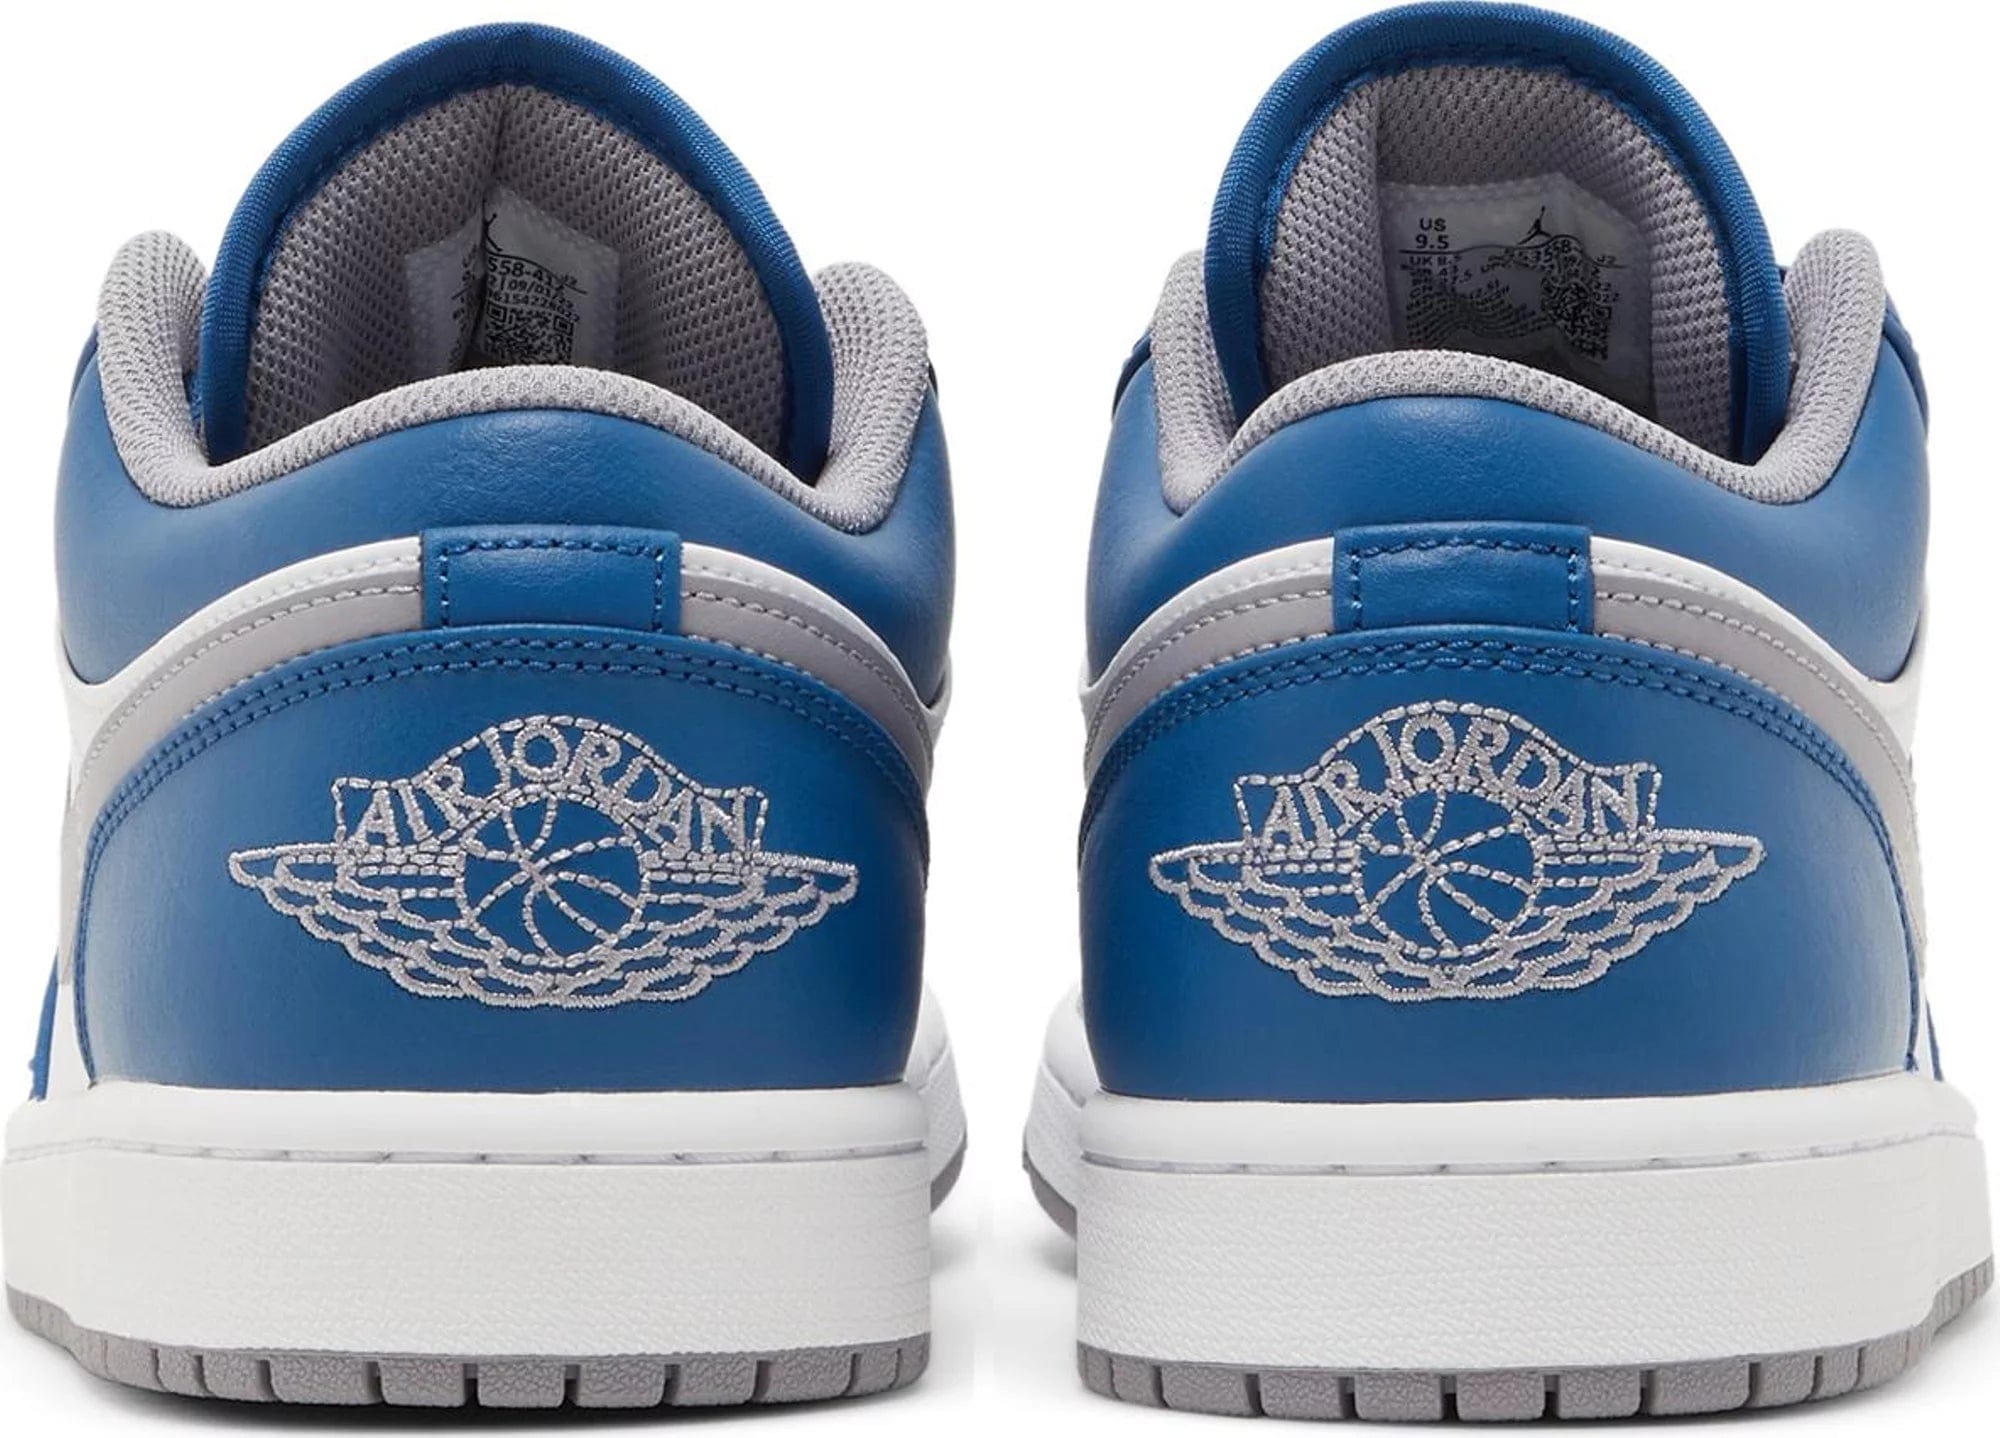 sneakers Nike Air Jordan 1 Low True Blue Men's